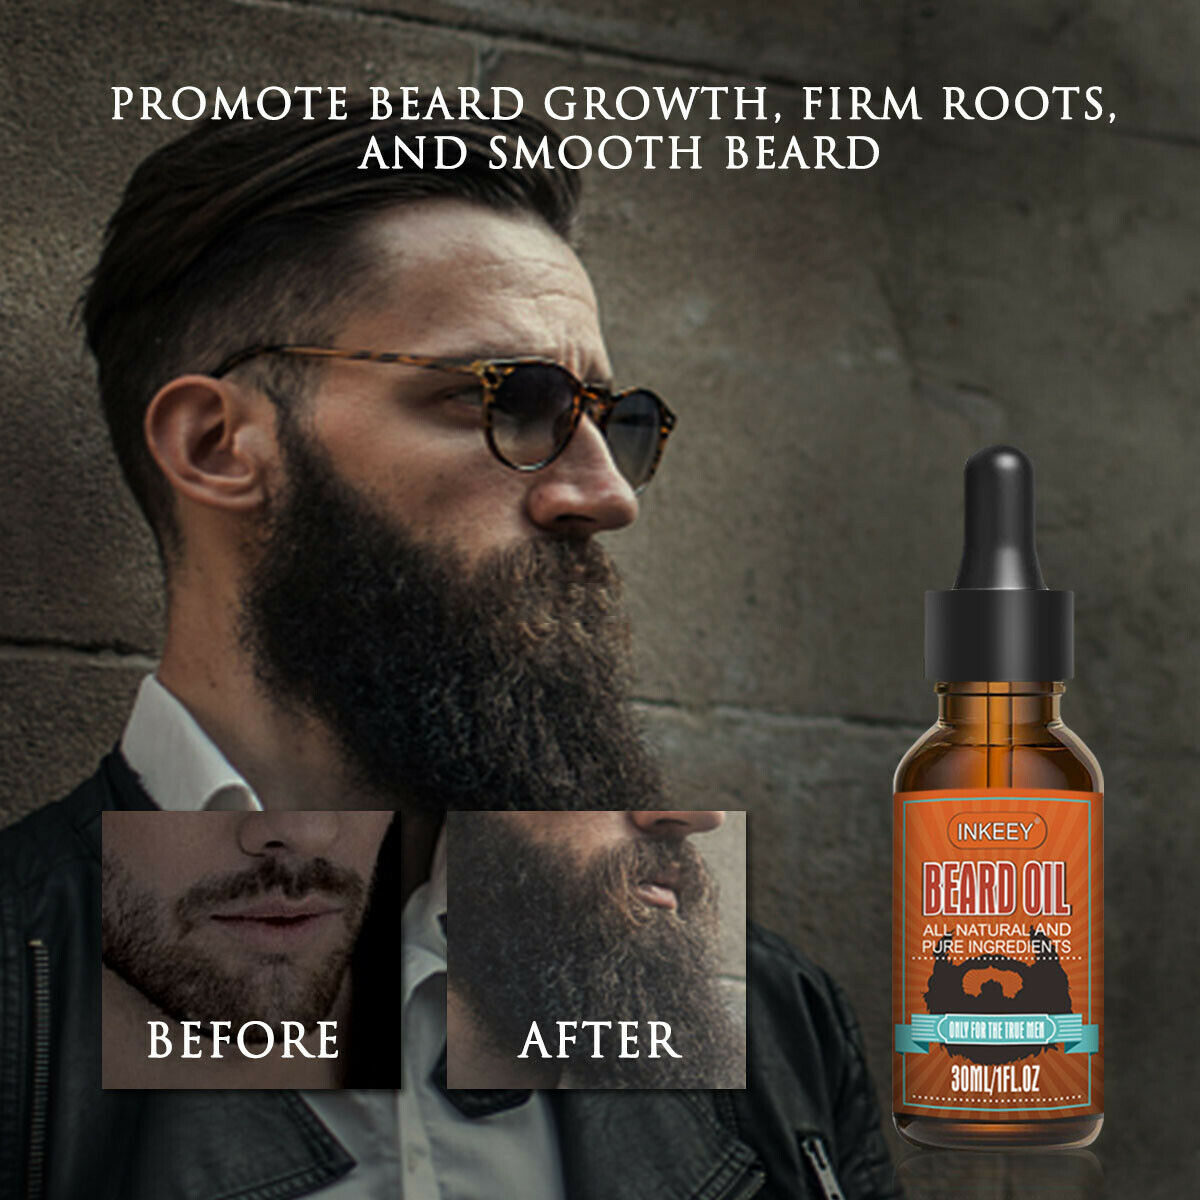 Beard Oil For MEN